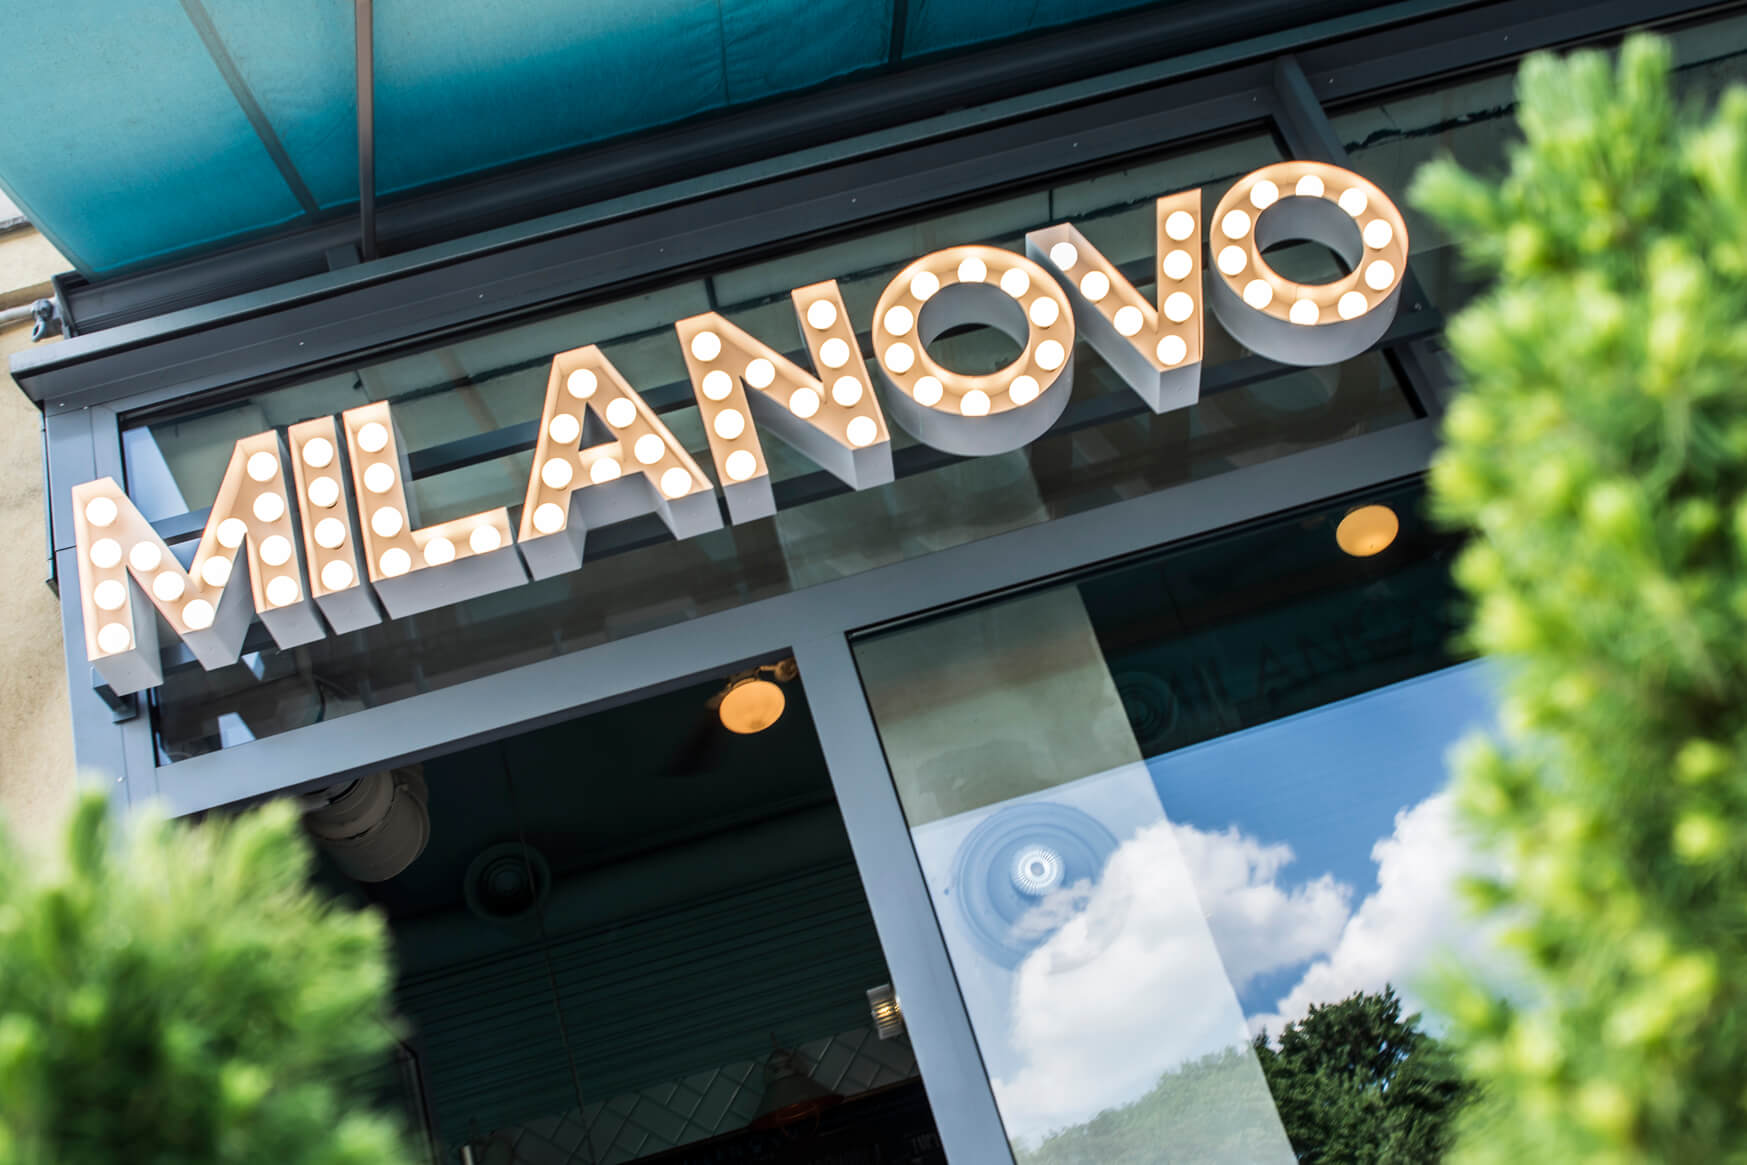 MILANOVO - MILANOVO - Buchstaben mit Glühbirnen über dem Eingang des Restaurants